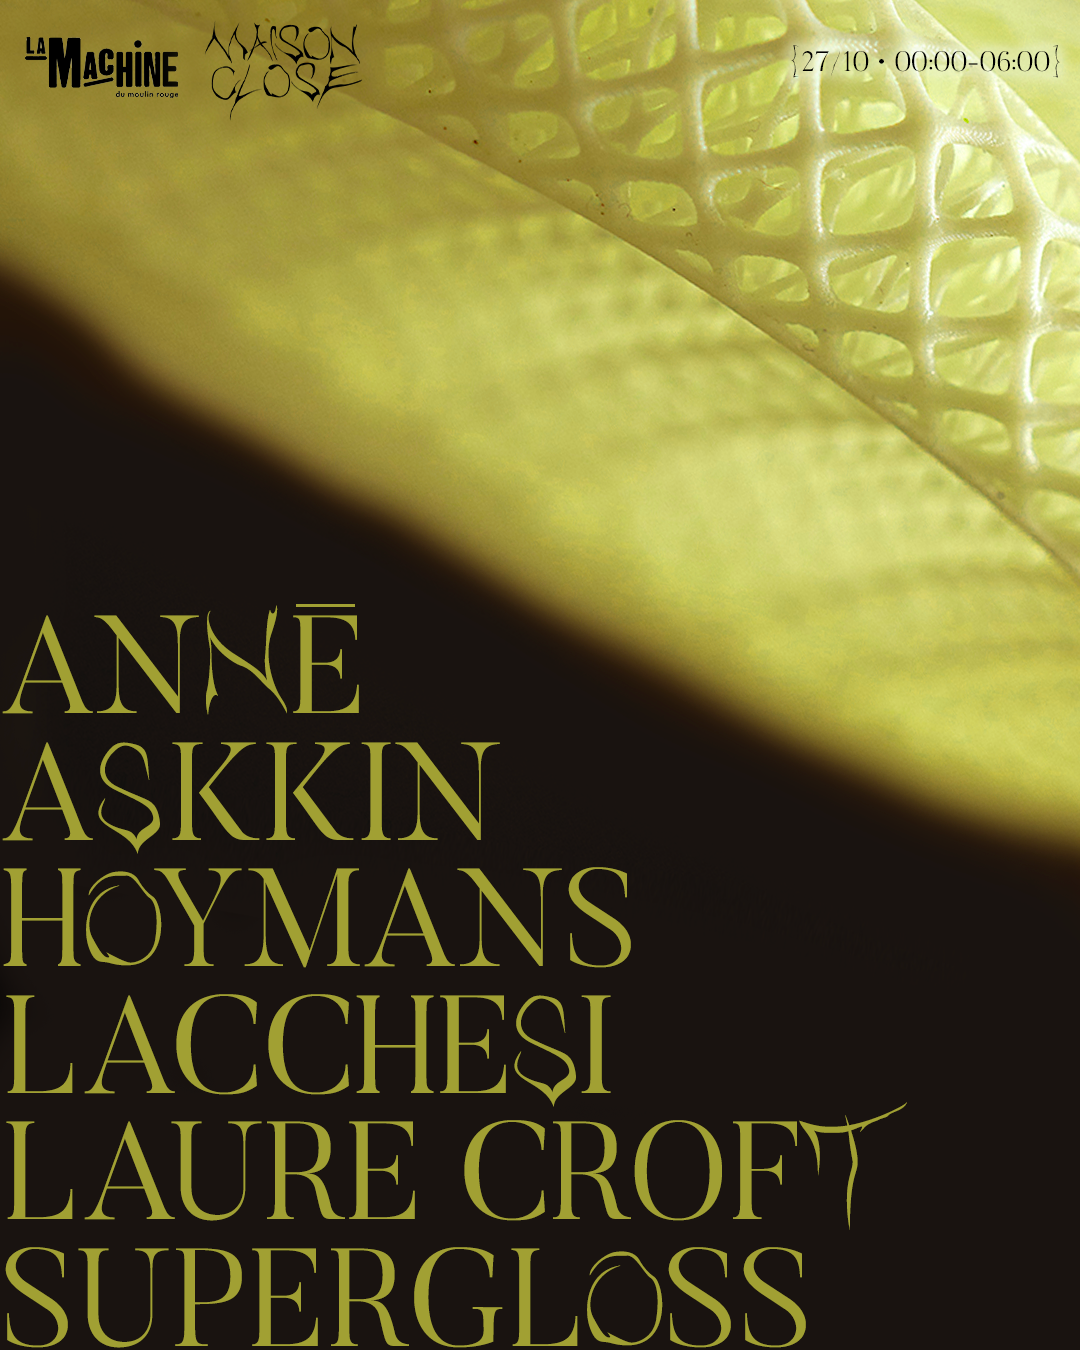 Maison Close: ANNĒ, Askkin, Hoymans, Lacchesi, Laure Croft, Supergloss - Página frontal